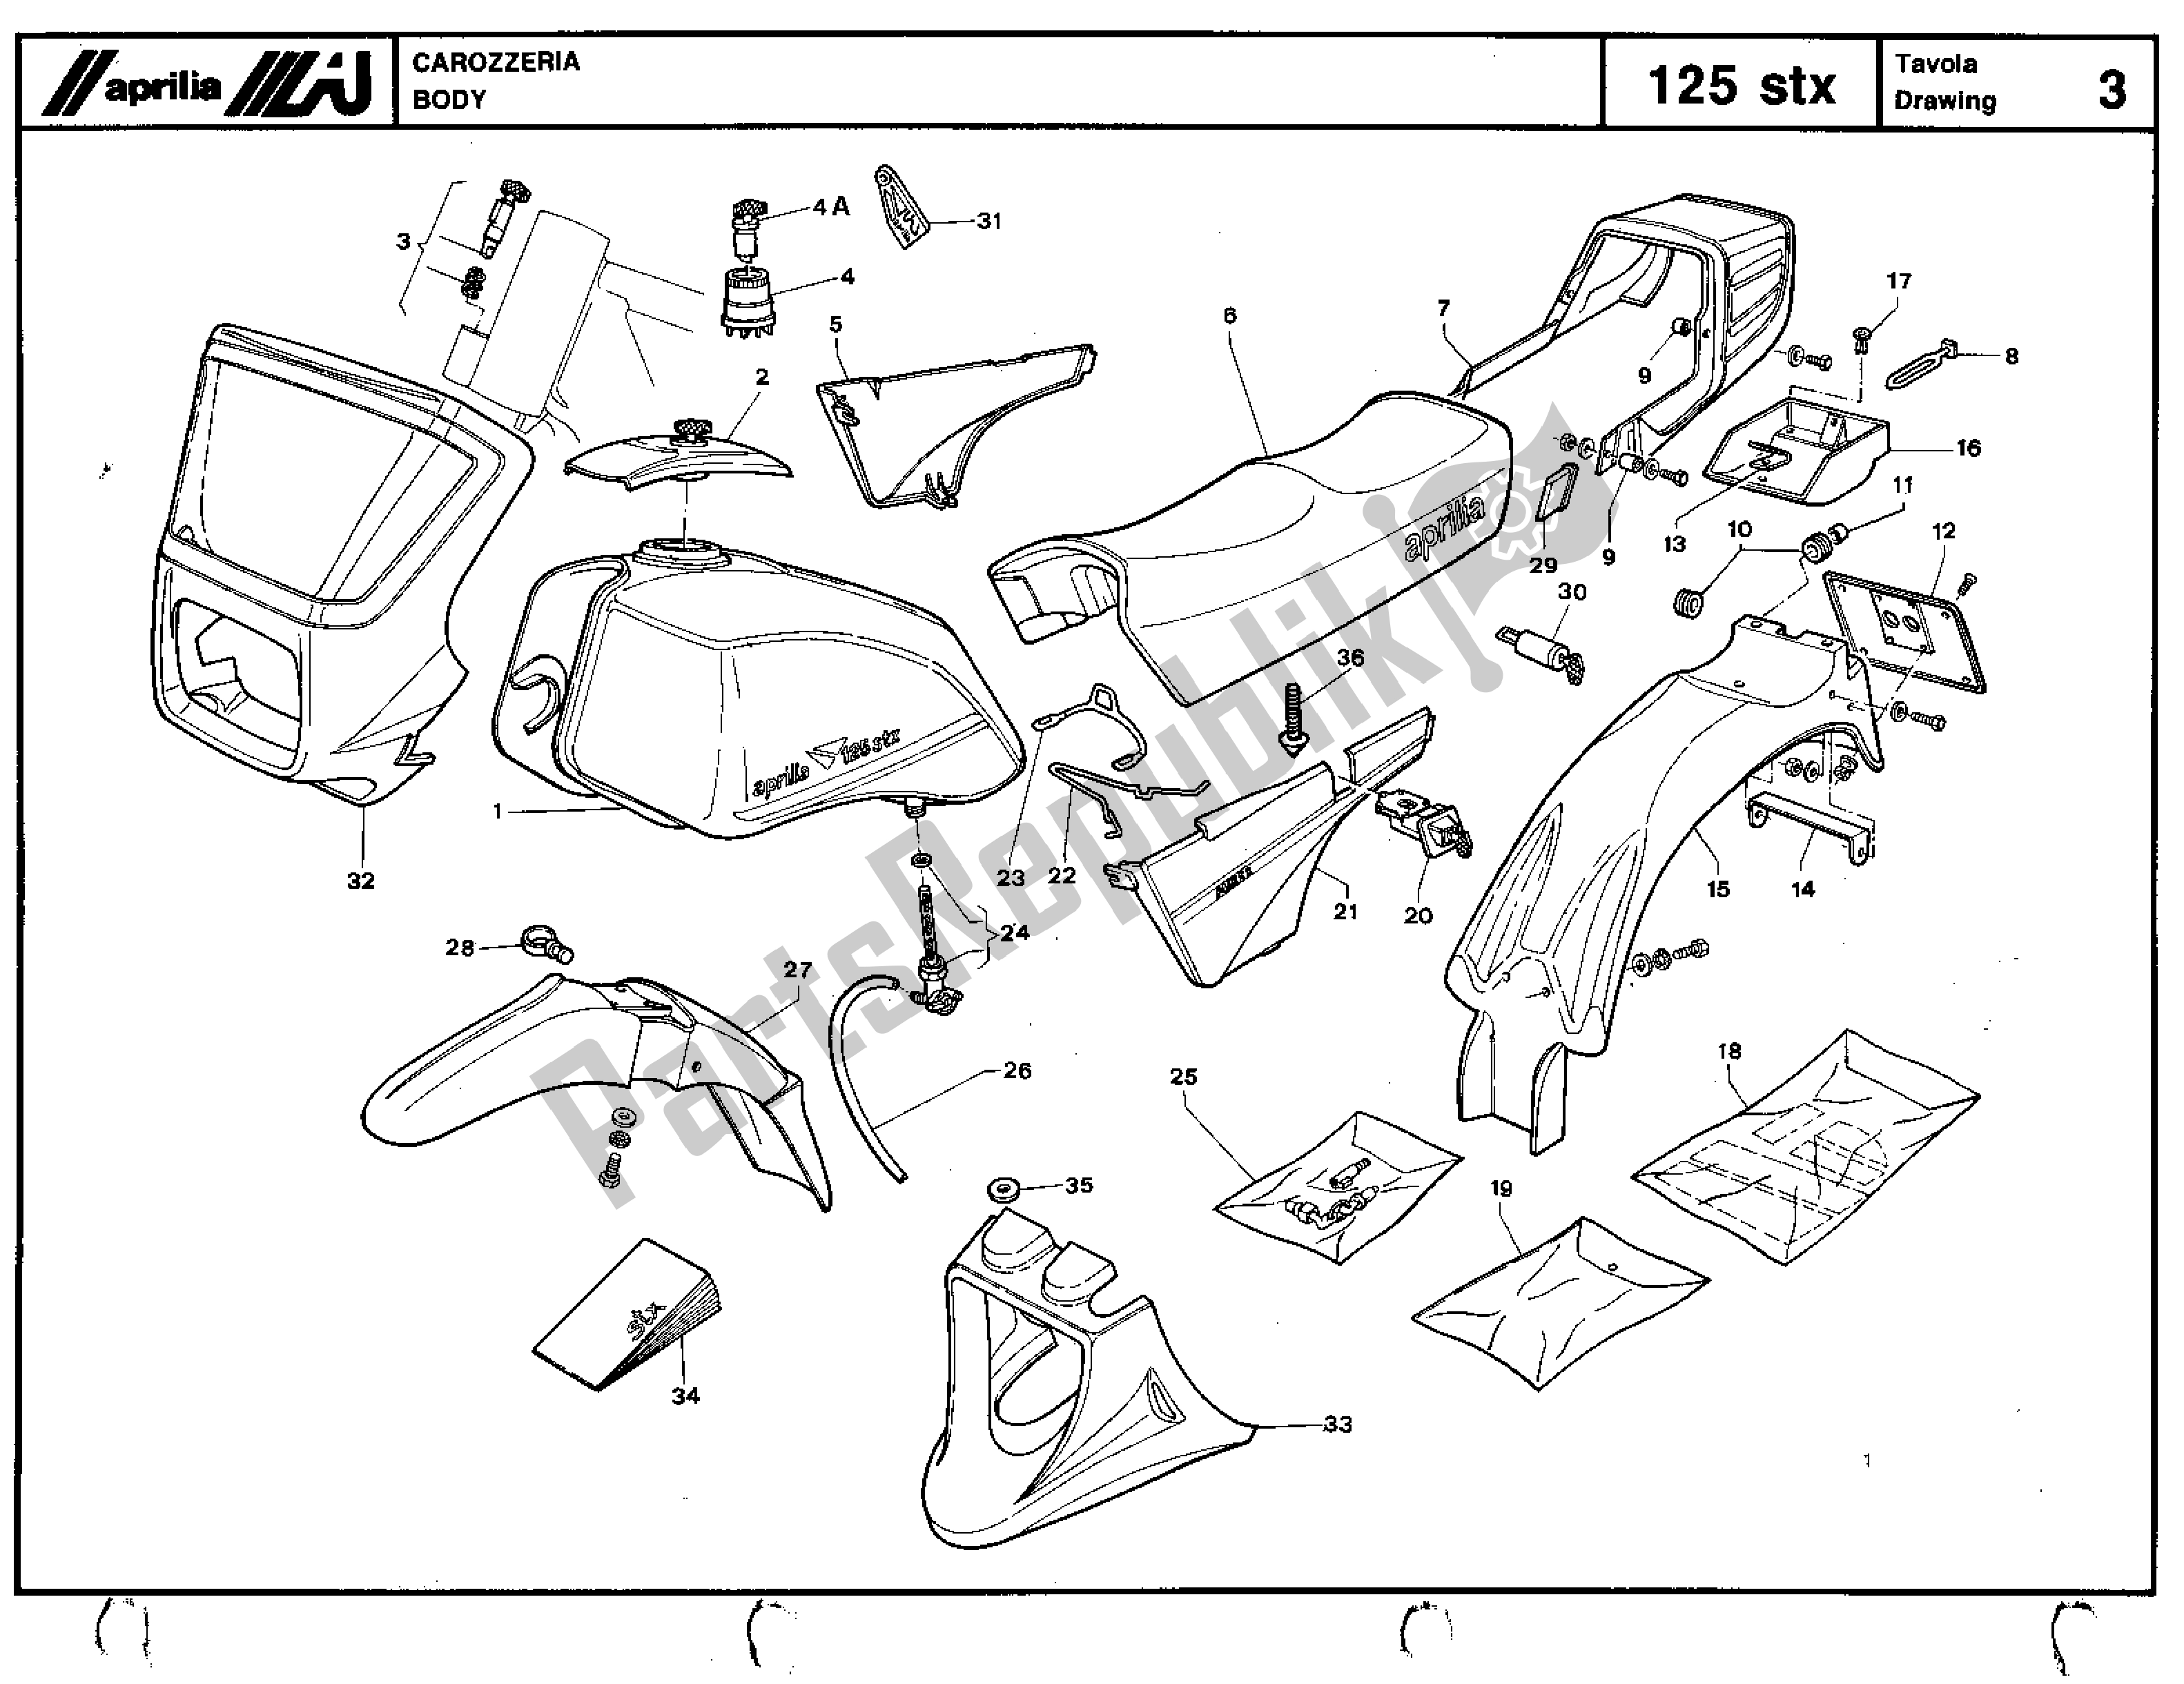 All parts for the Body of the Aprilia STX 125 1984 - 1986